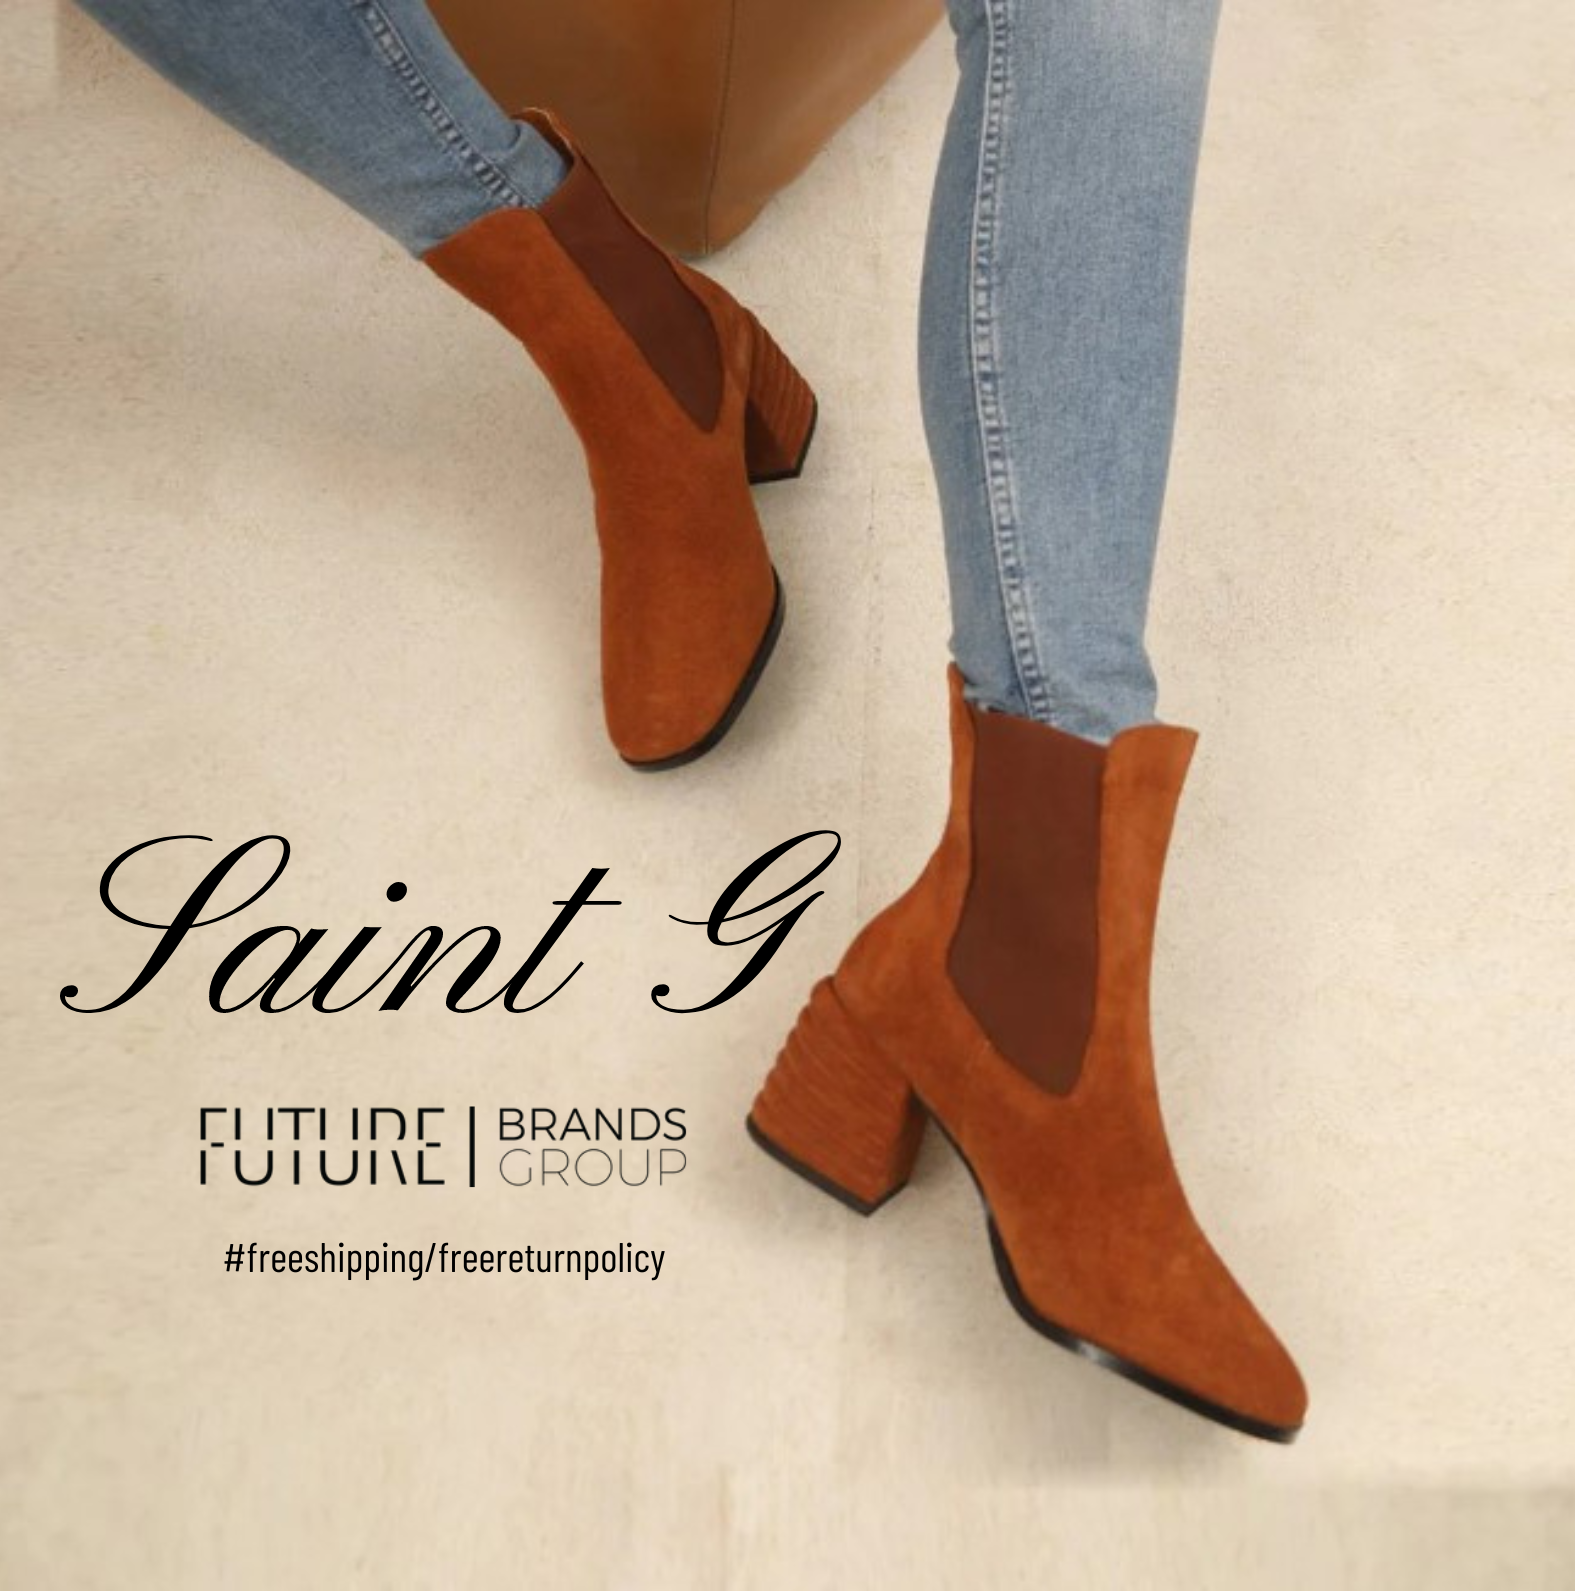 Rachel Cognac Suede Leather Ankle Boots | Saint G |  Future Brands Group